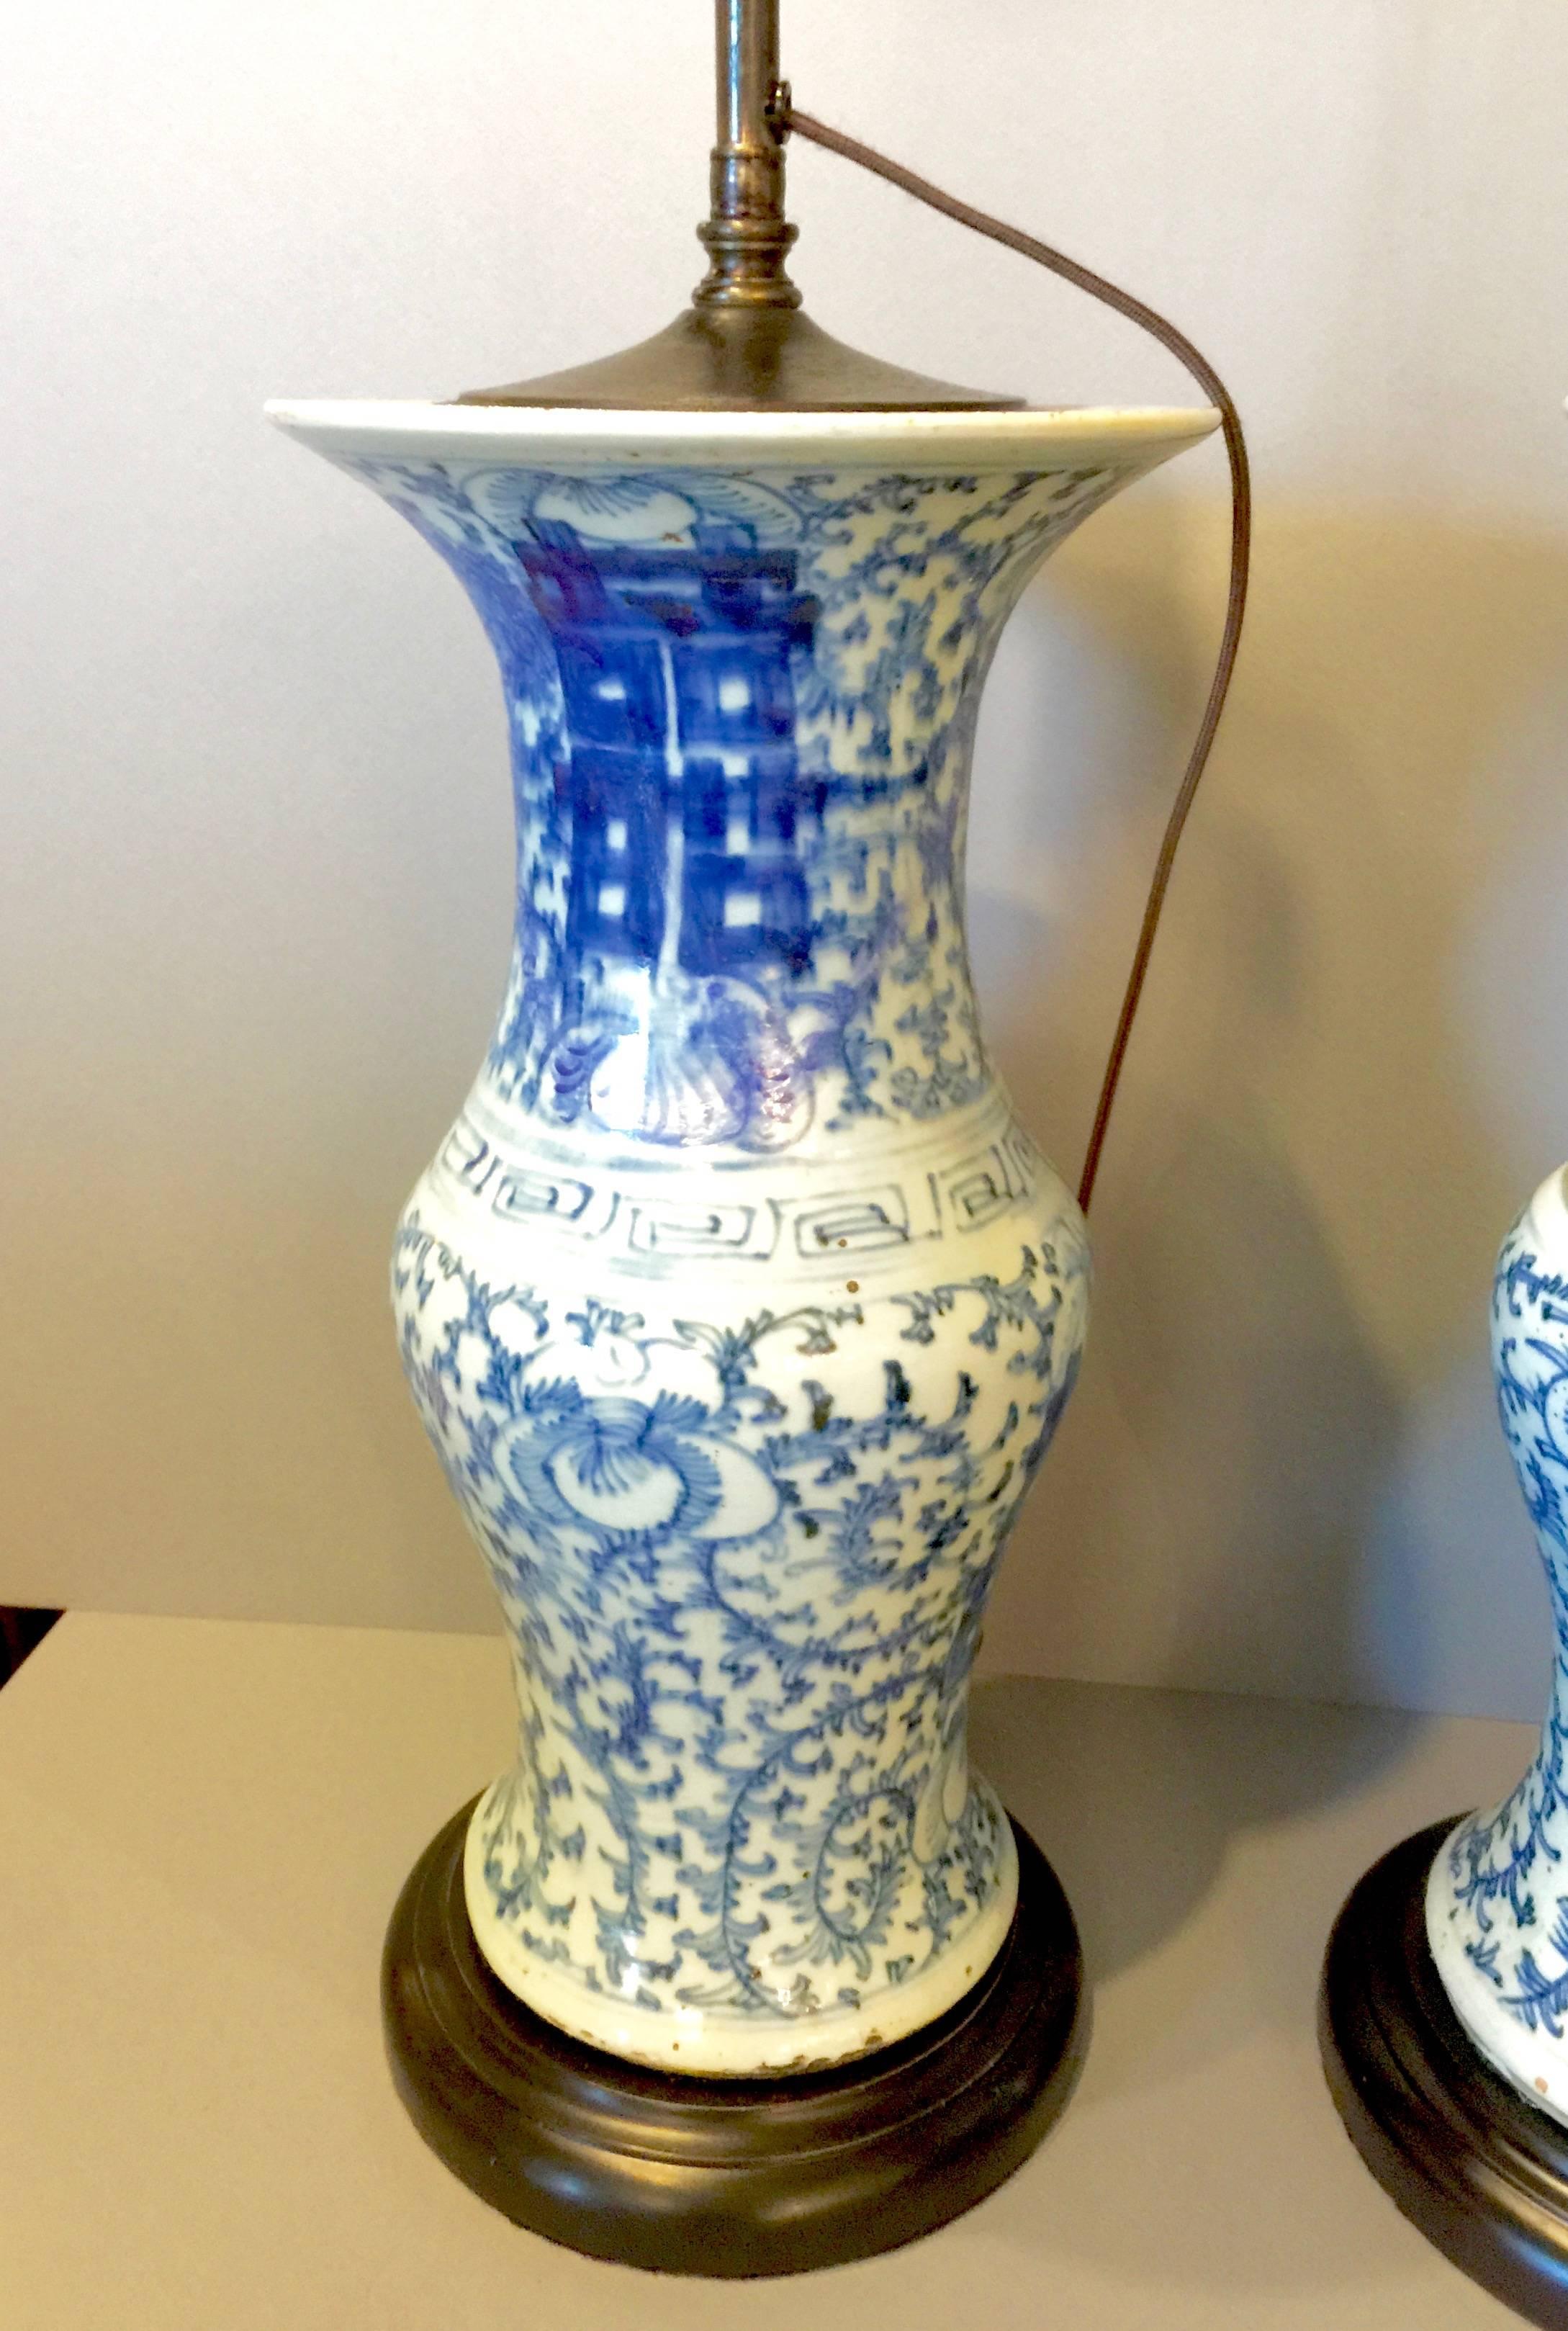 Dies ist ein ikonisches Paar chinesischer blau-weißer Vasen aus der späten Ching-Periode. Sie werden neuerdings als Lampen mit einem französischen Draht montiert, um die Vasen nicht anbohren zu müssen. Die Vasen haben die gleiche Größe und das